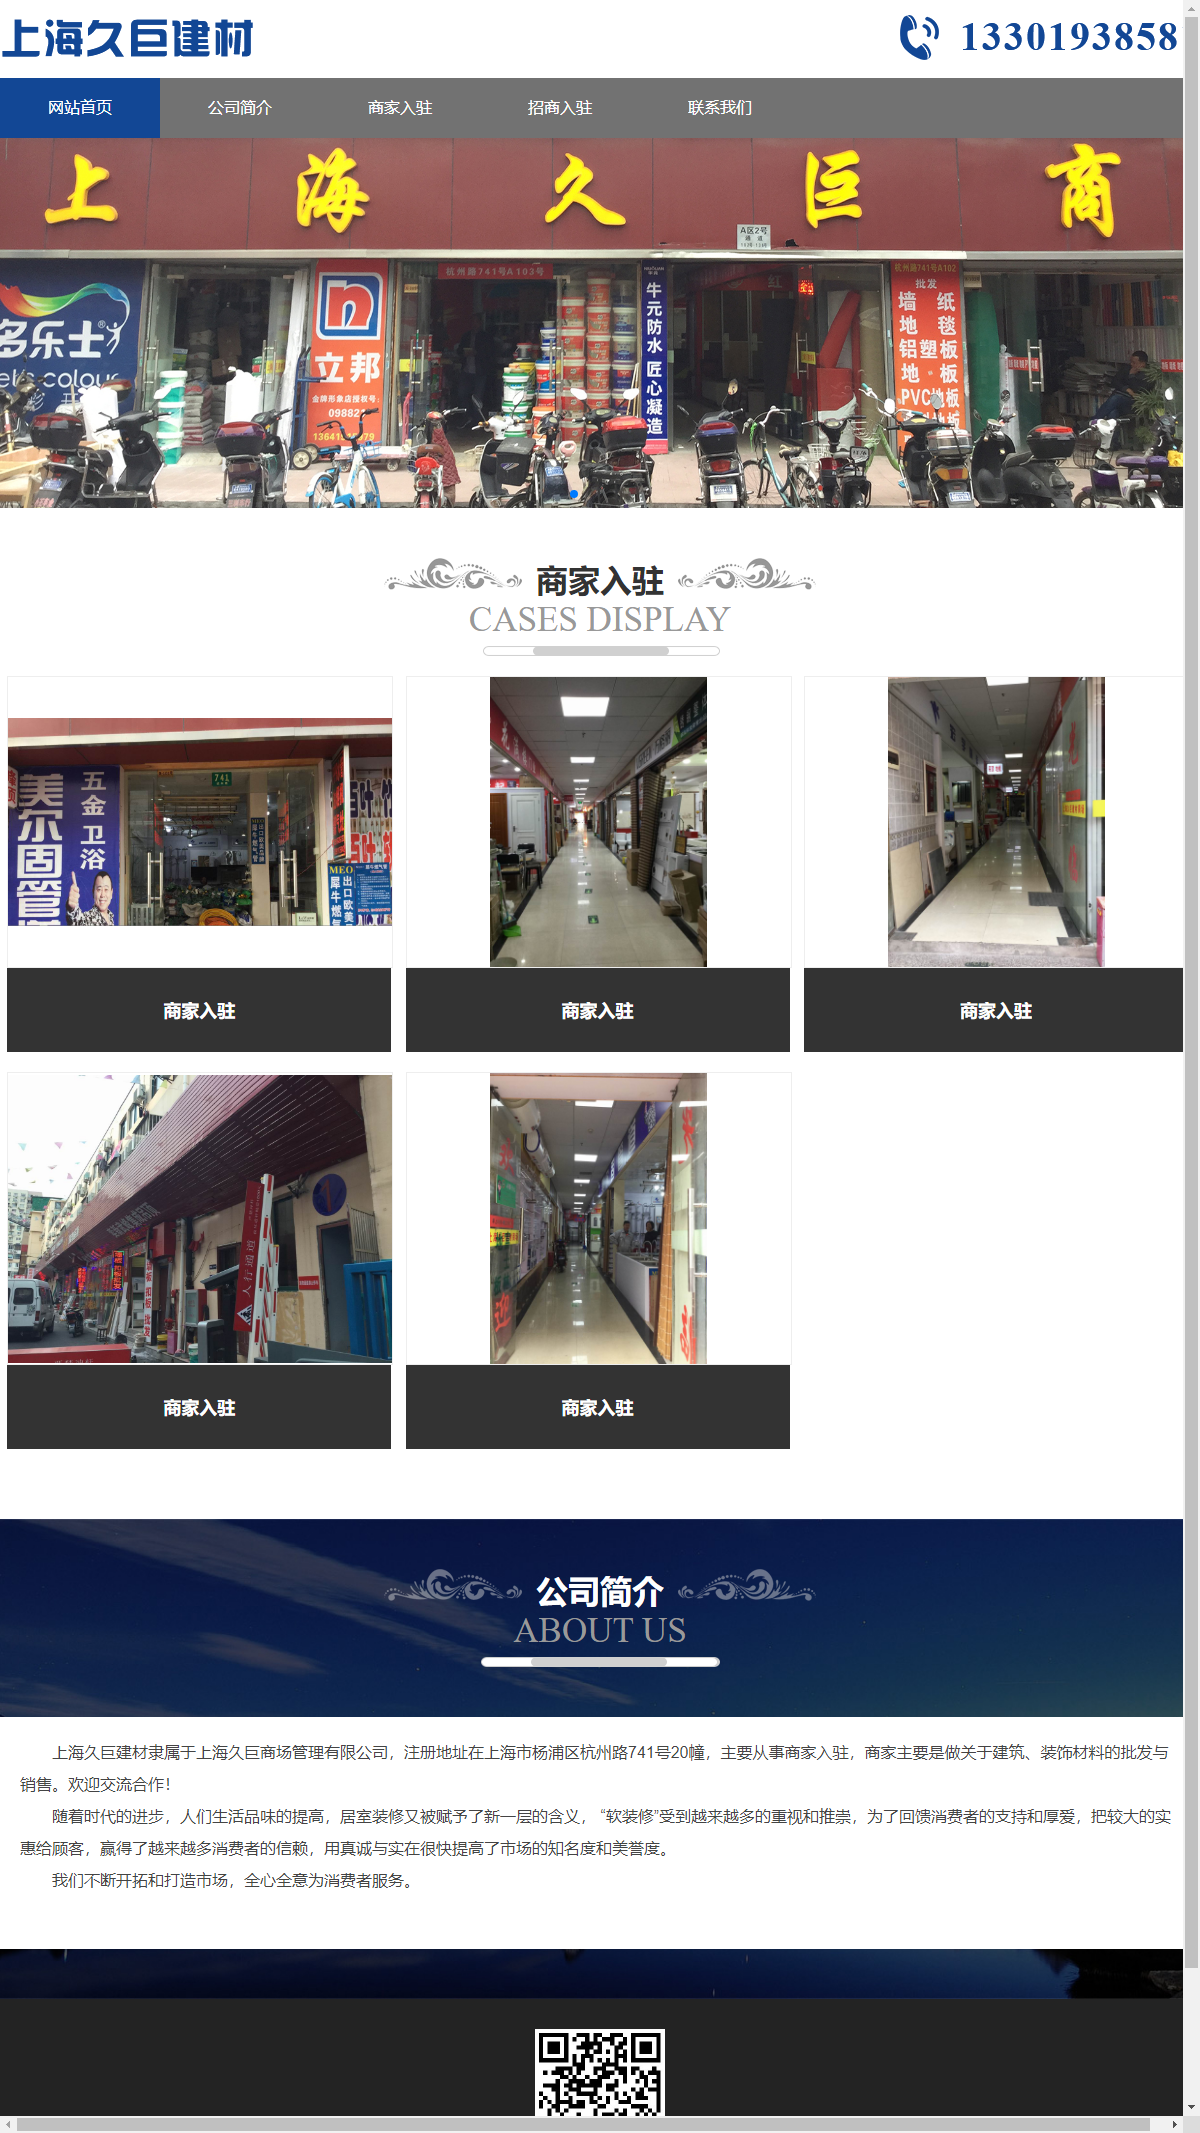 上海久巨商场管理有限公司网站案例